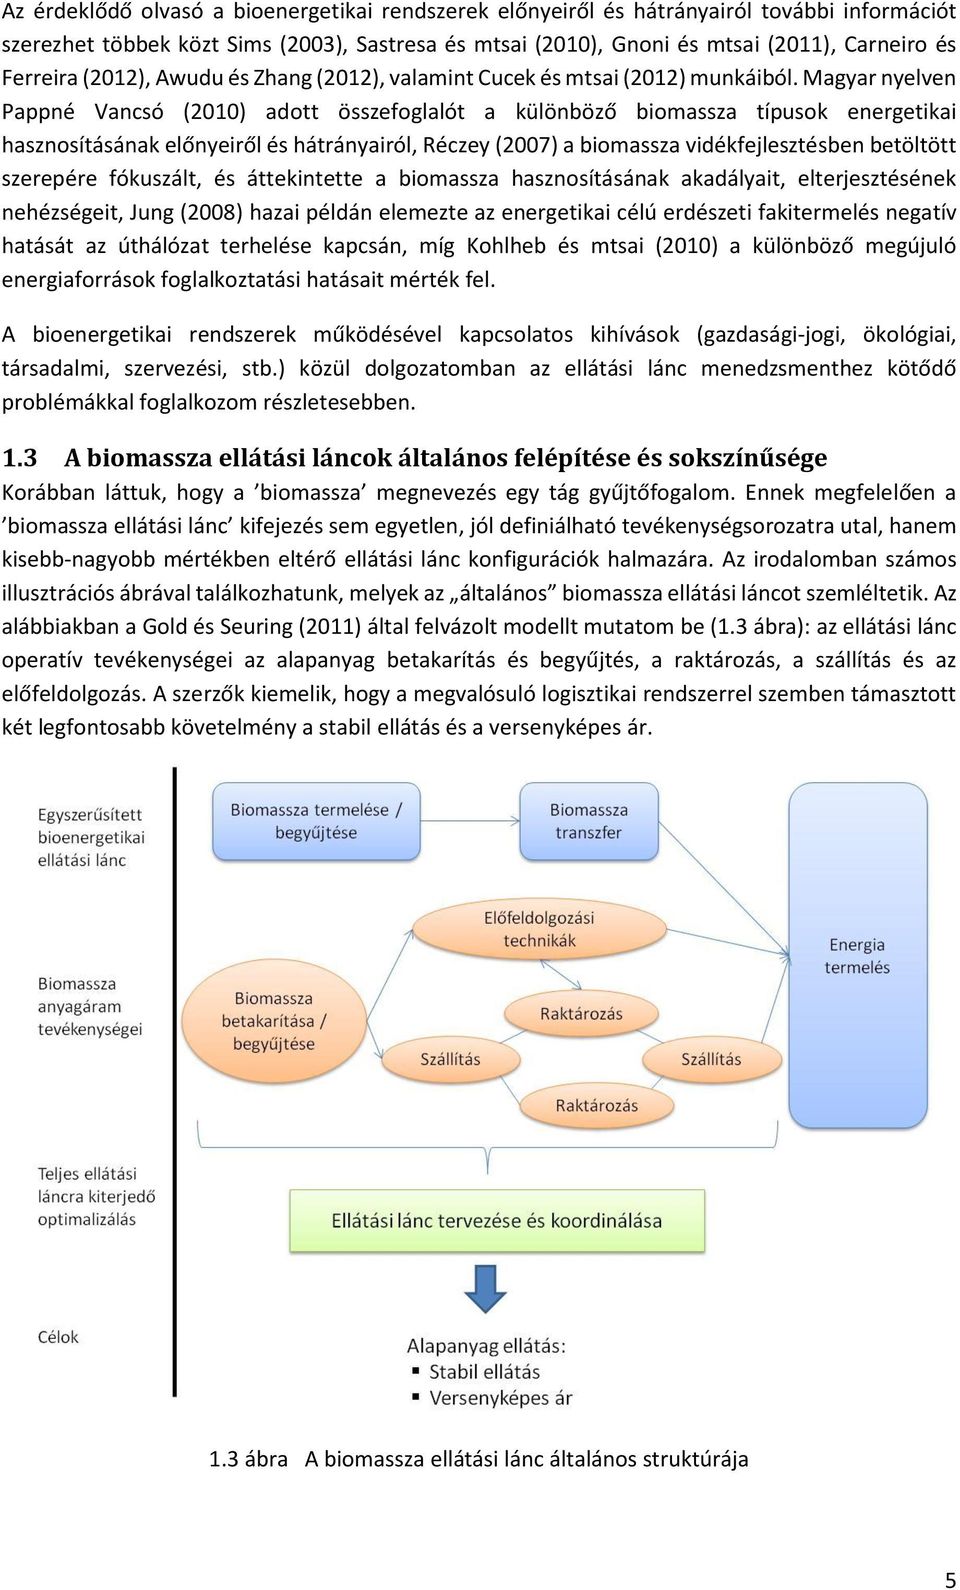 Magyar nyelven Pappné Vancsó (2010) adott összefoglalót a különböző biomassza típusok energetikai hasznosításának előnyeiről és hátrányairól, Réczey (2007) a biomassza vidékfejlesztésben betöltött